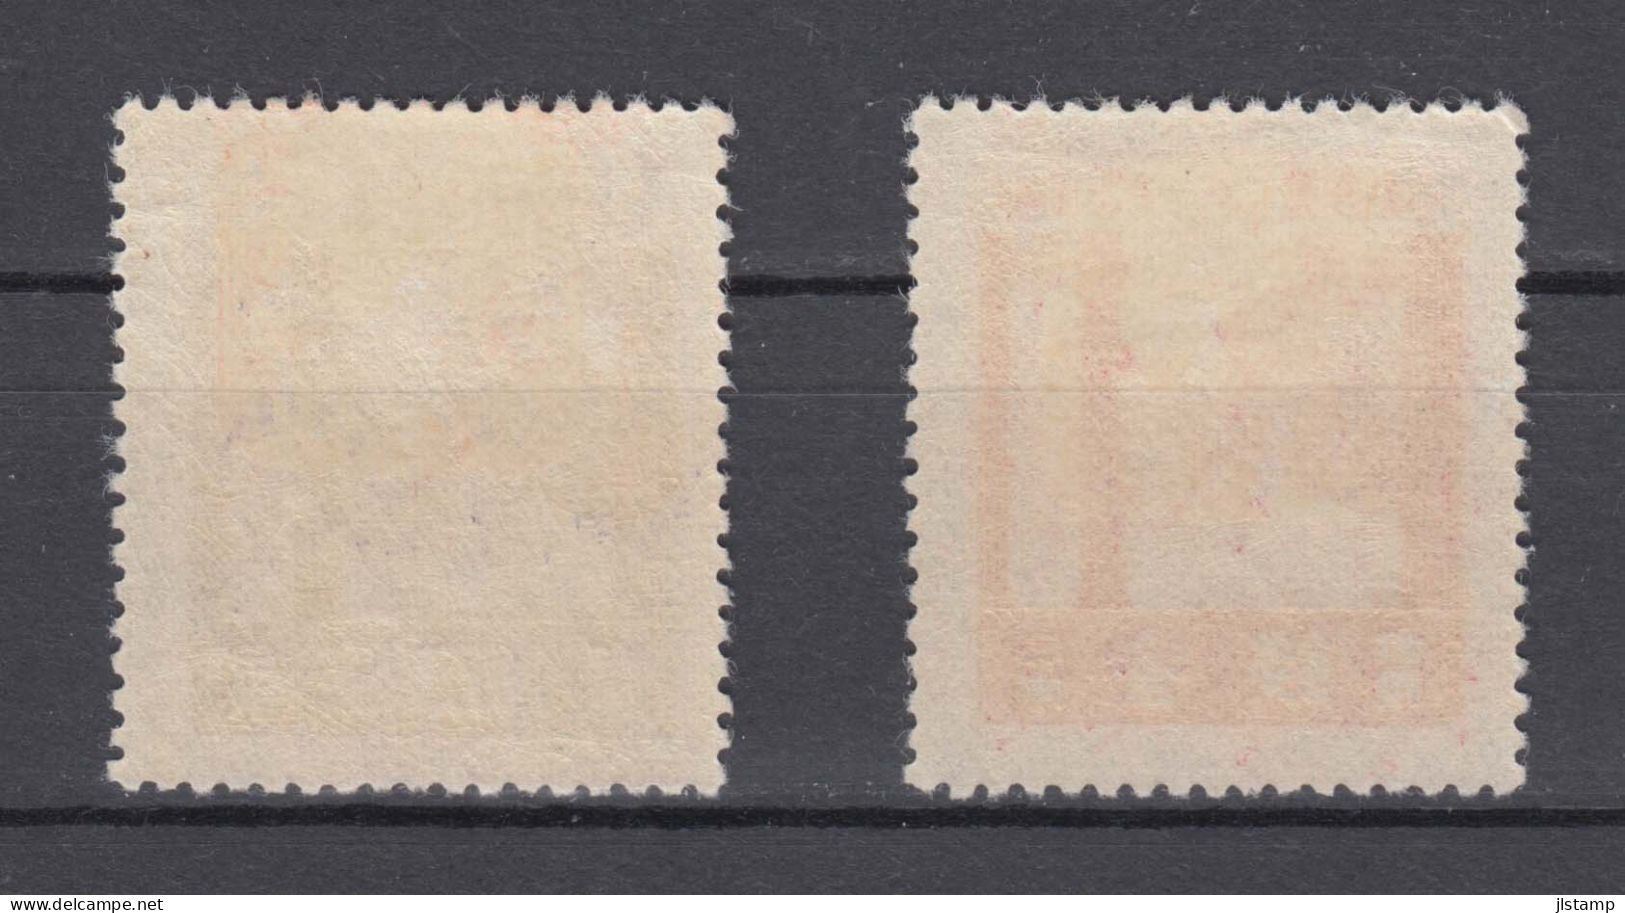 Japan 1929 Ise Shrines Stamps Set Of 2 ,Scott# 206-207,OG MH,VF - Nuevos